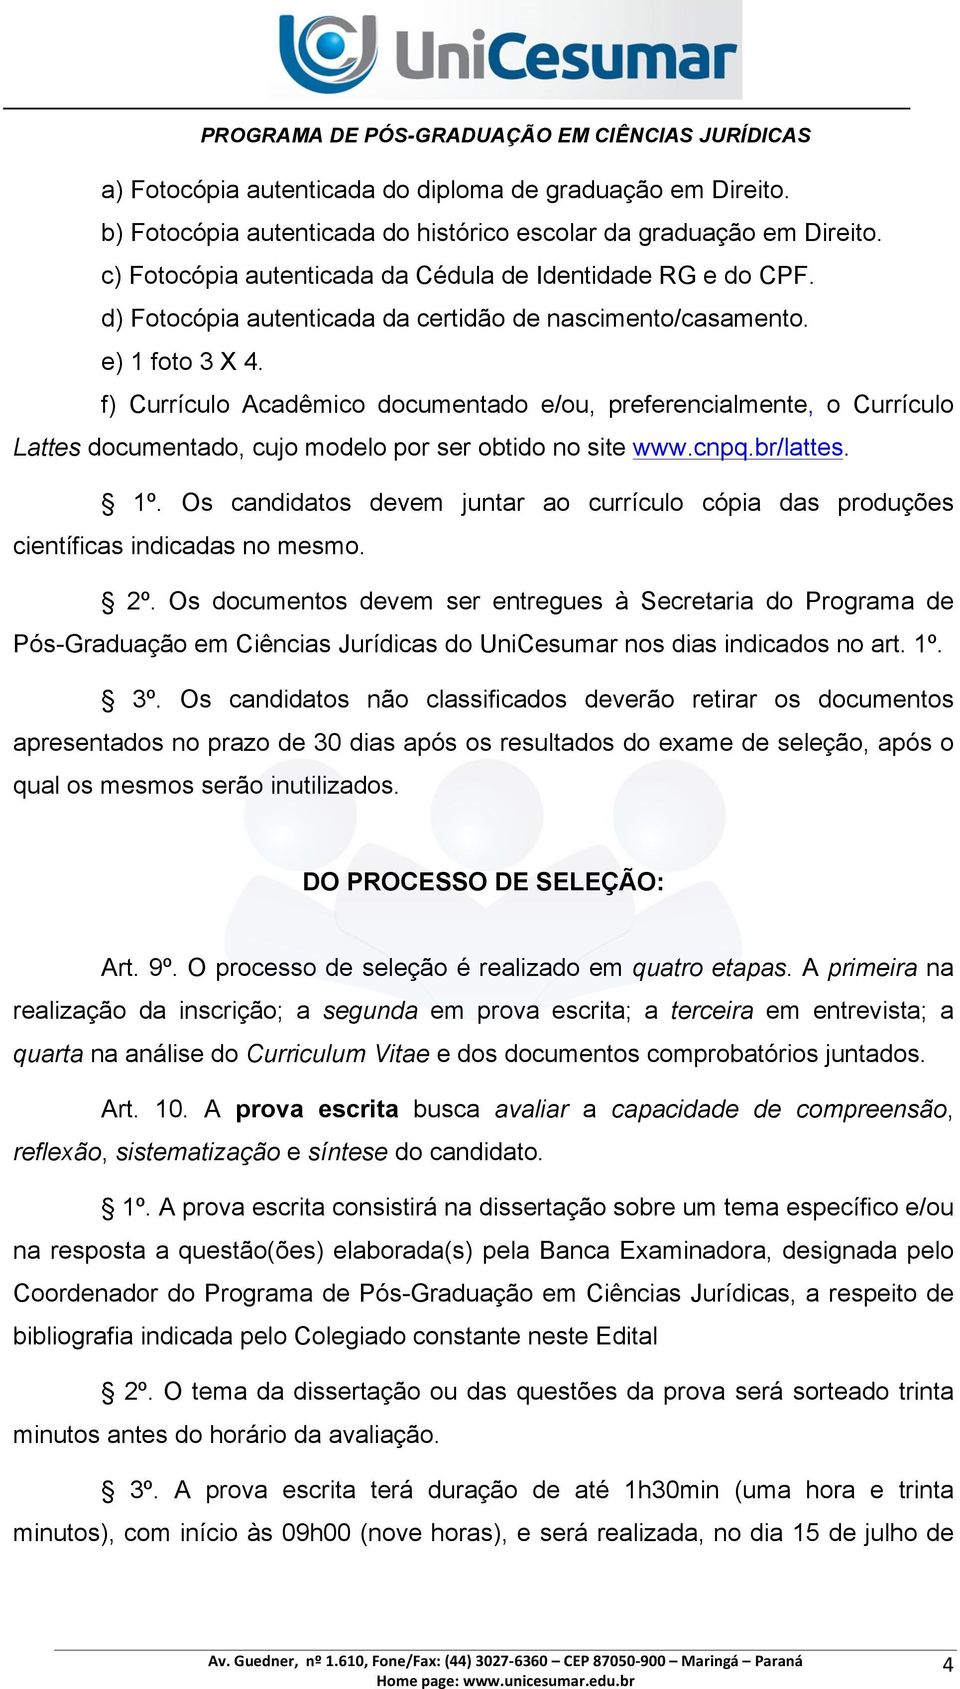 f) Currículo Acadêmico documentado e/ou, preferencialmente, o Currículo Lattes documentado, cujo modelo por ser obtido no site www.cnpq.br/lattes. 1º.